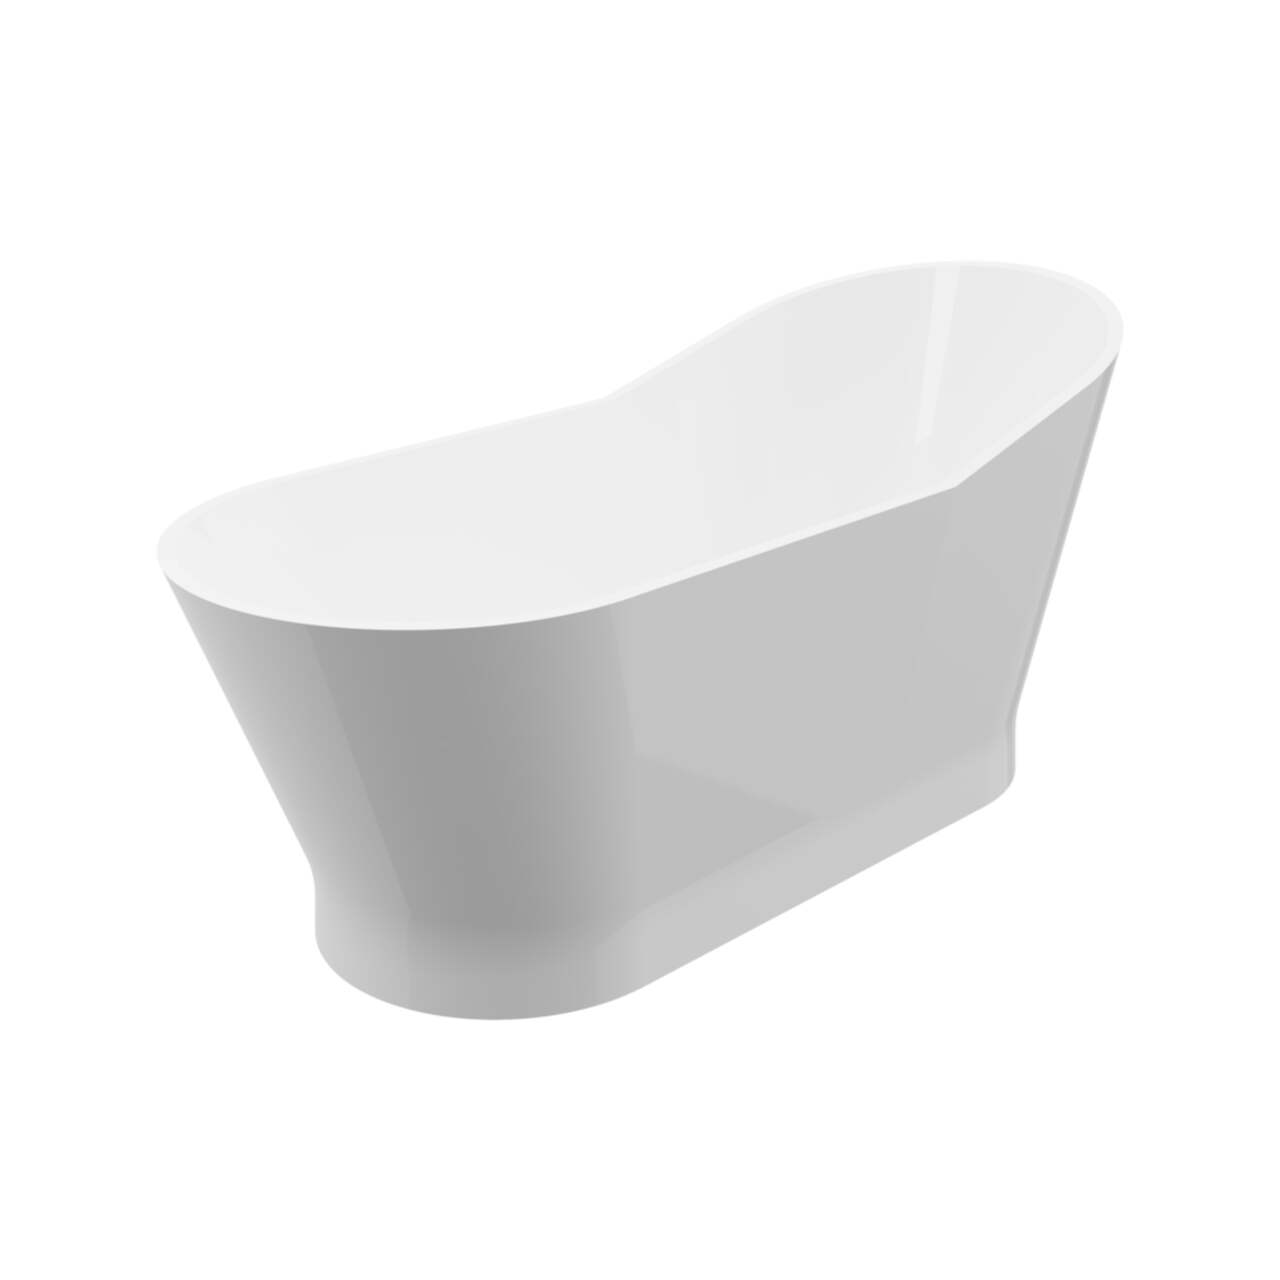 Simplicite Anti-Slip Rubber Bath Tub Mat, White, 16-in x 27-in